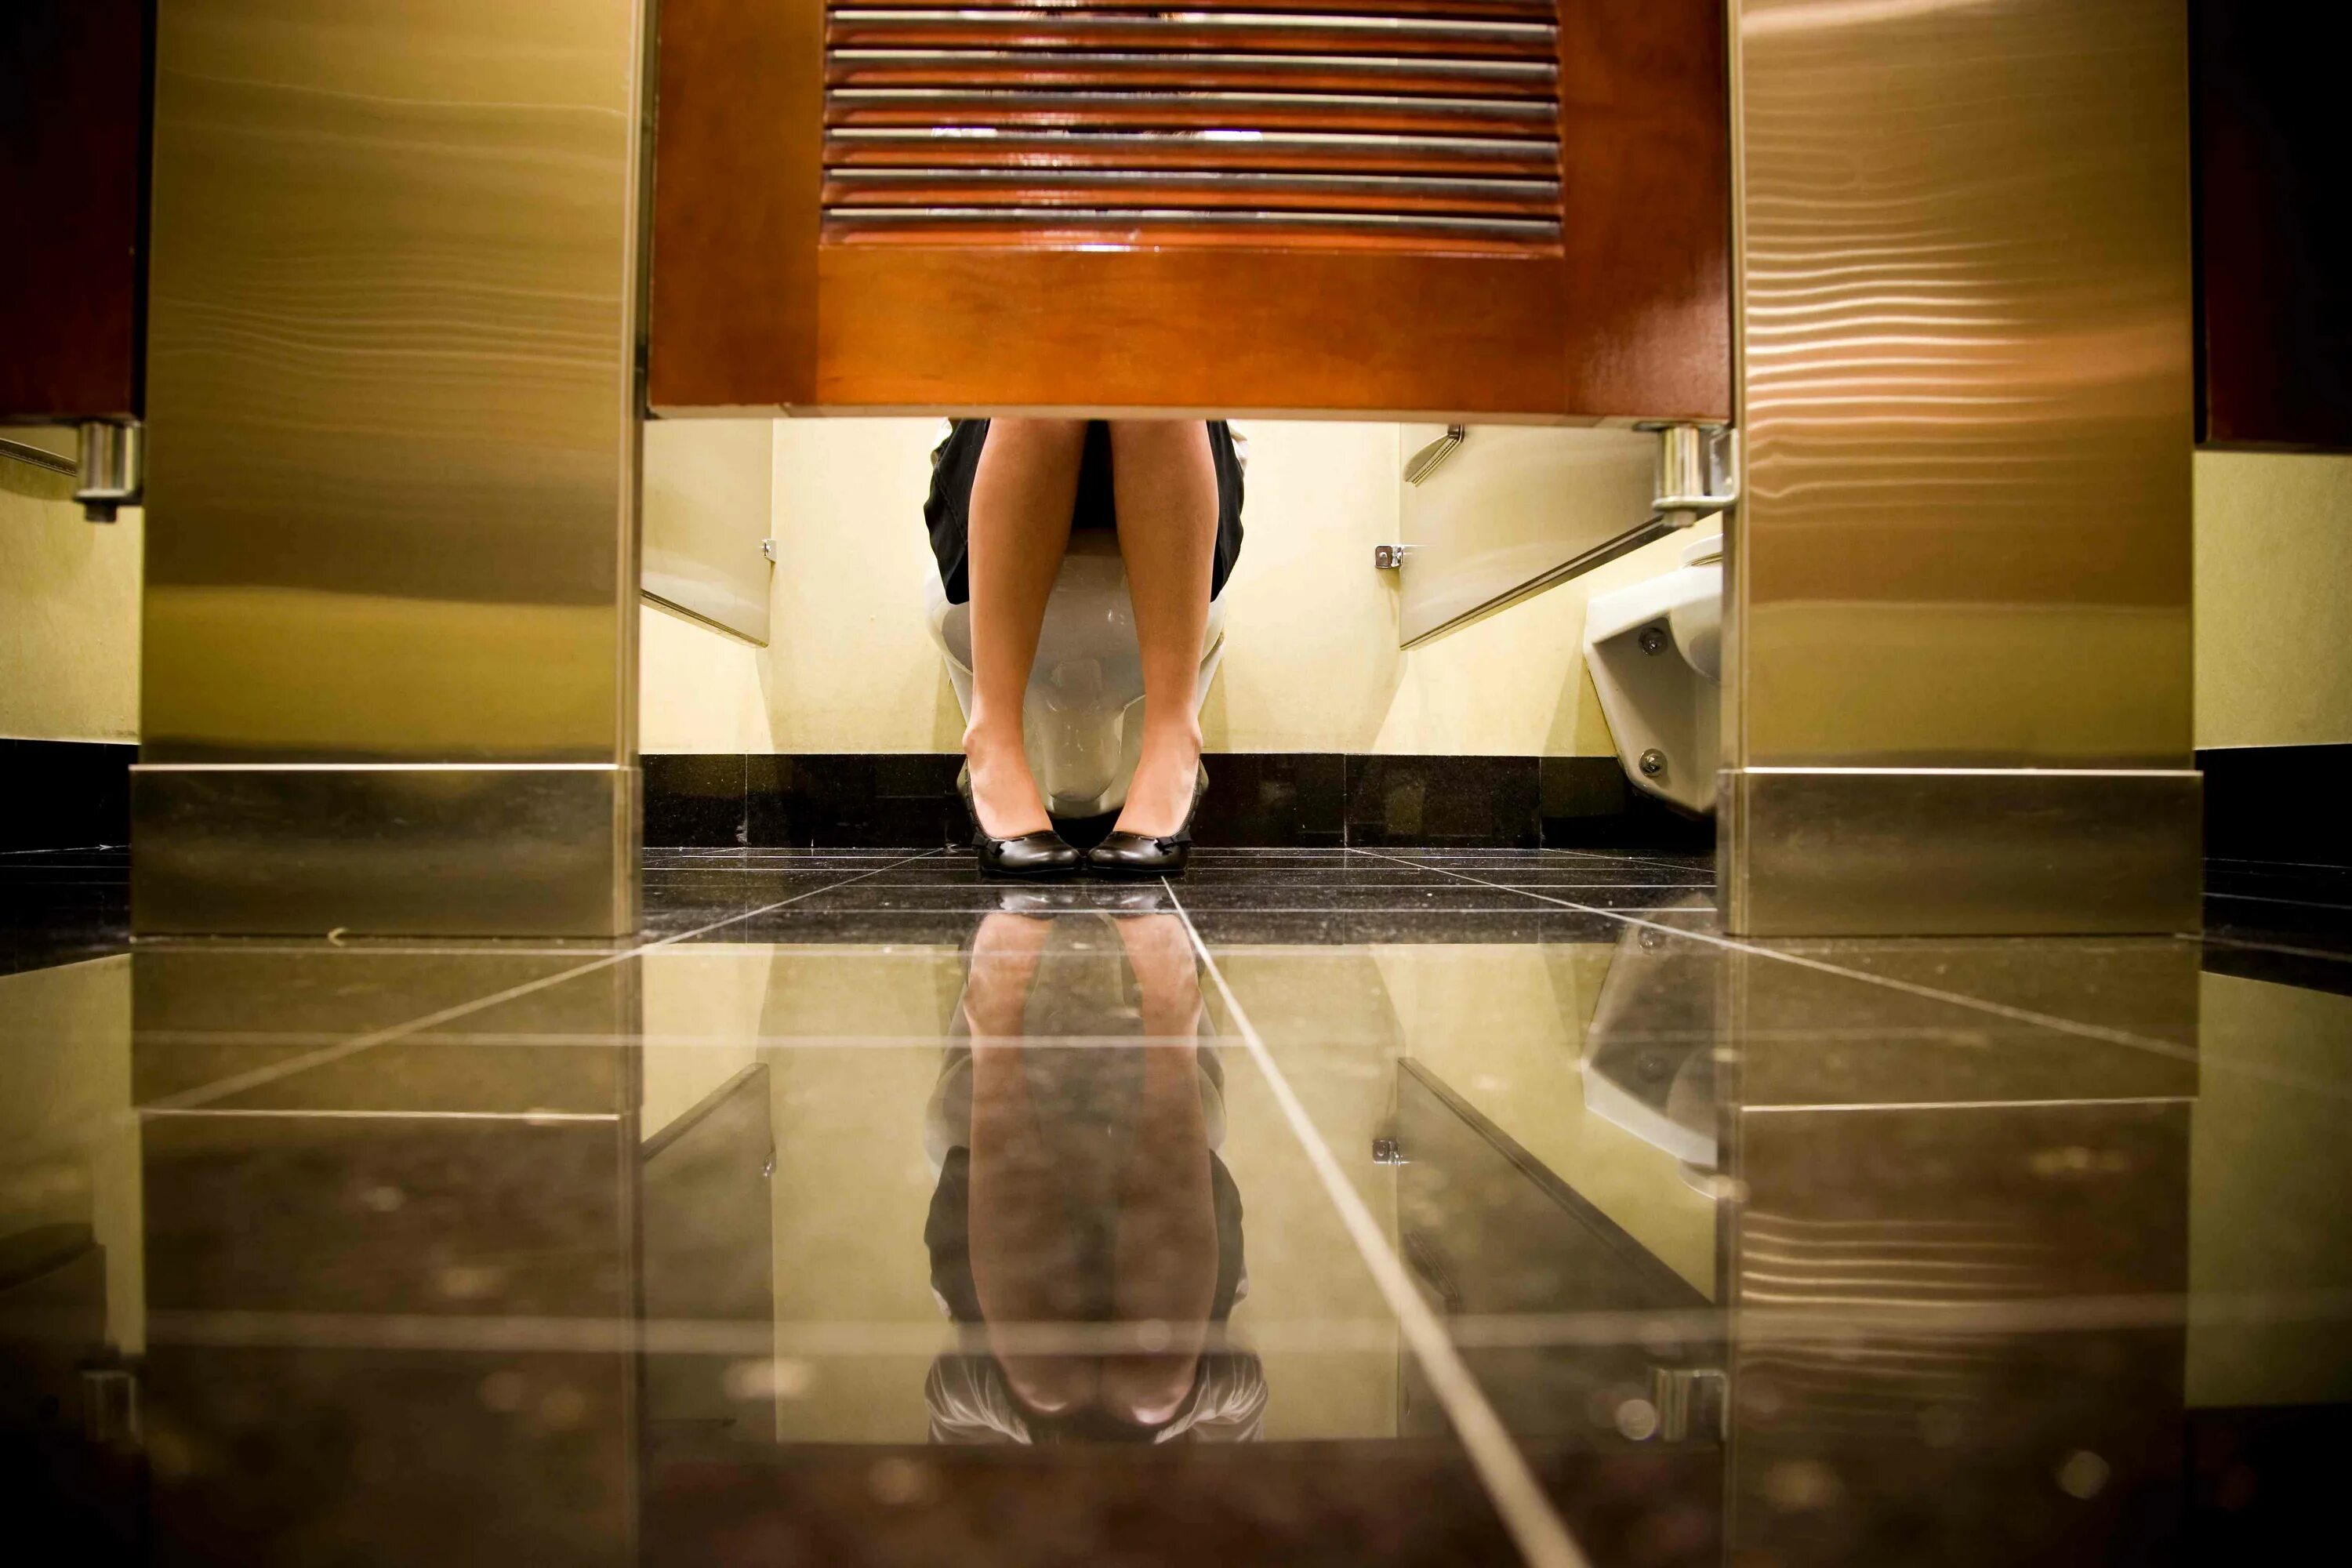 Hidden cam in toilet. Девушкавобществено мтуале. Девушки в общественном туалете. Ноги в общественном туалете. Видеокамеры в общественных туалетах.